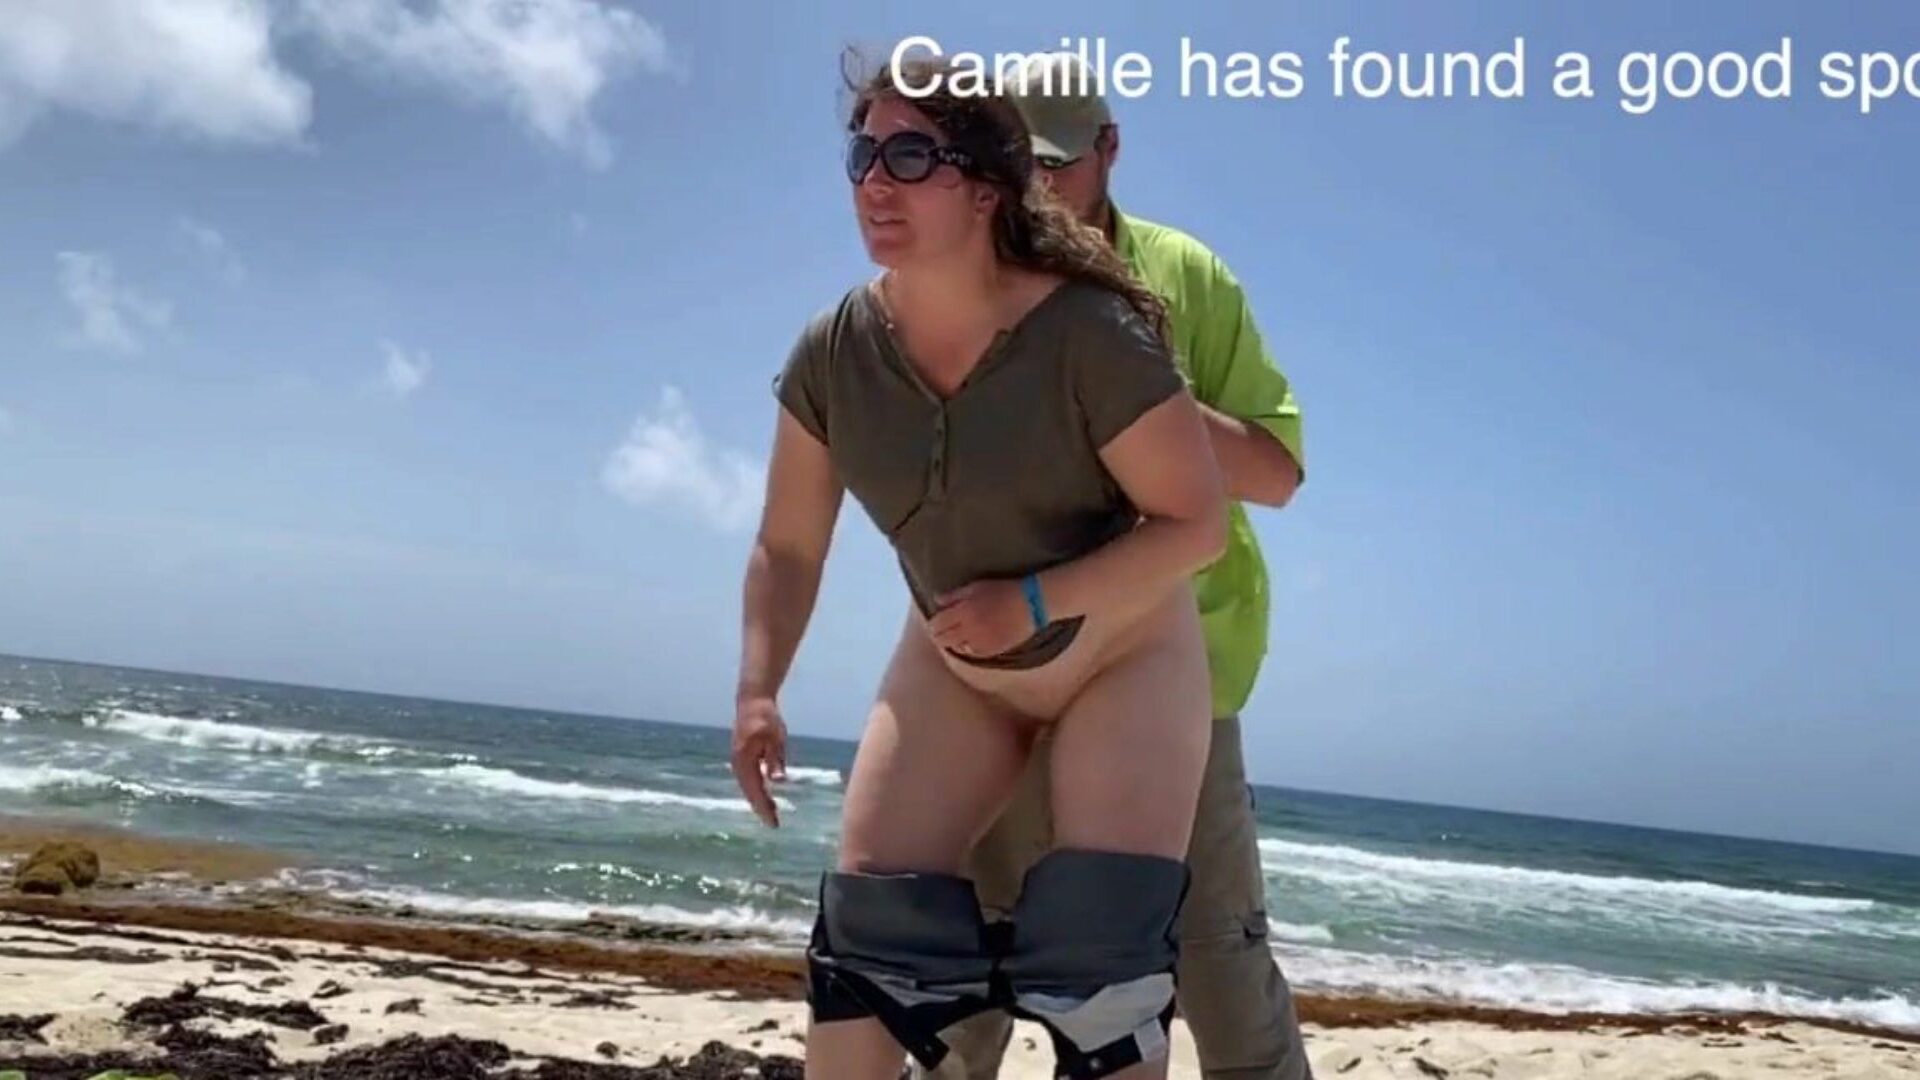 camille si všimla, že má dovádění na pláži, camille našla pěkné místo, kde někteří lidé pozorovali, že jsou hluční, takže každý uvidí